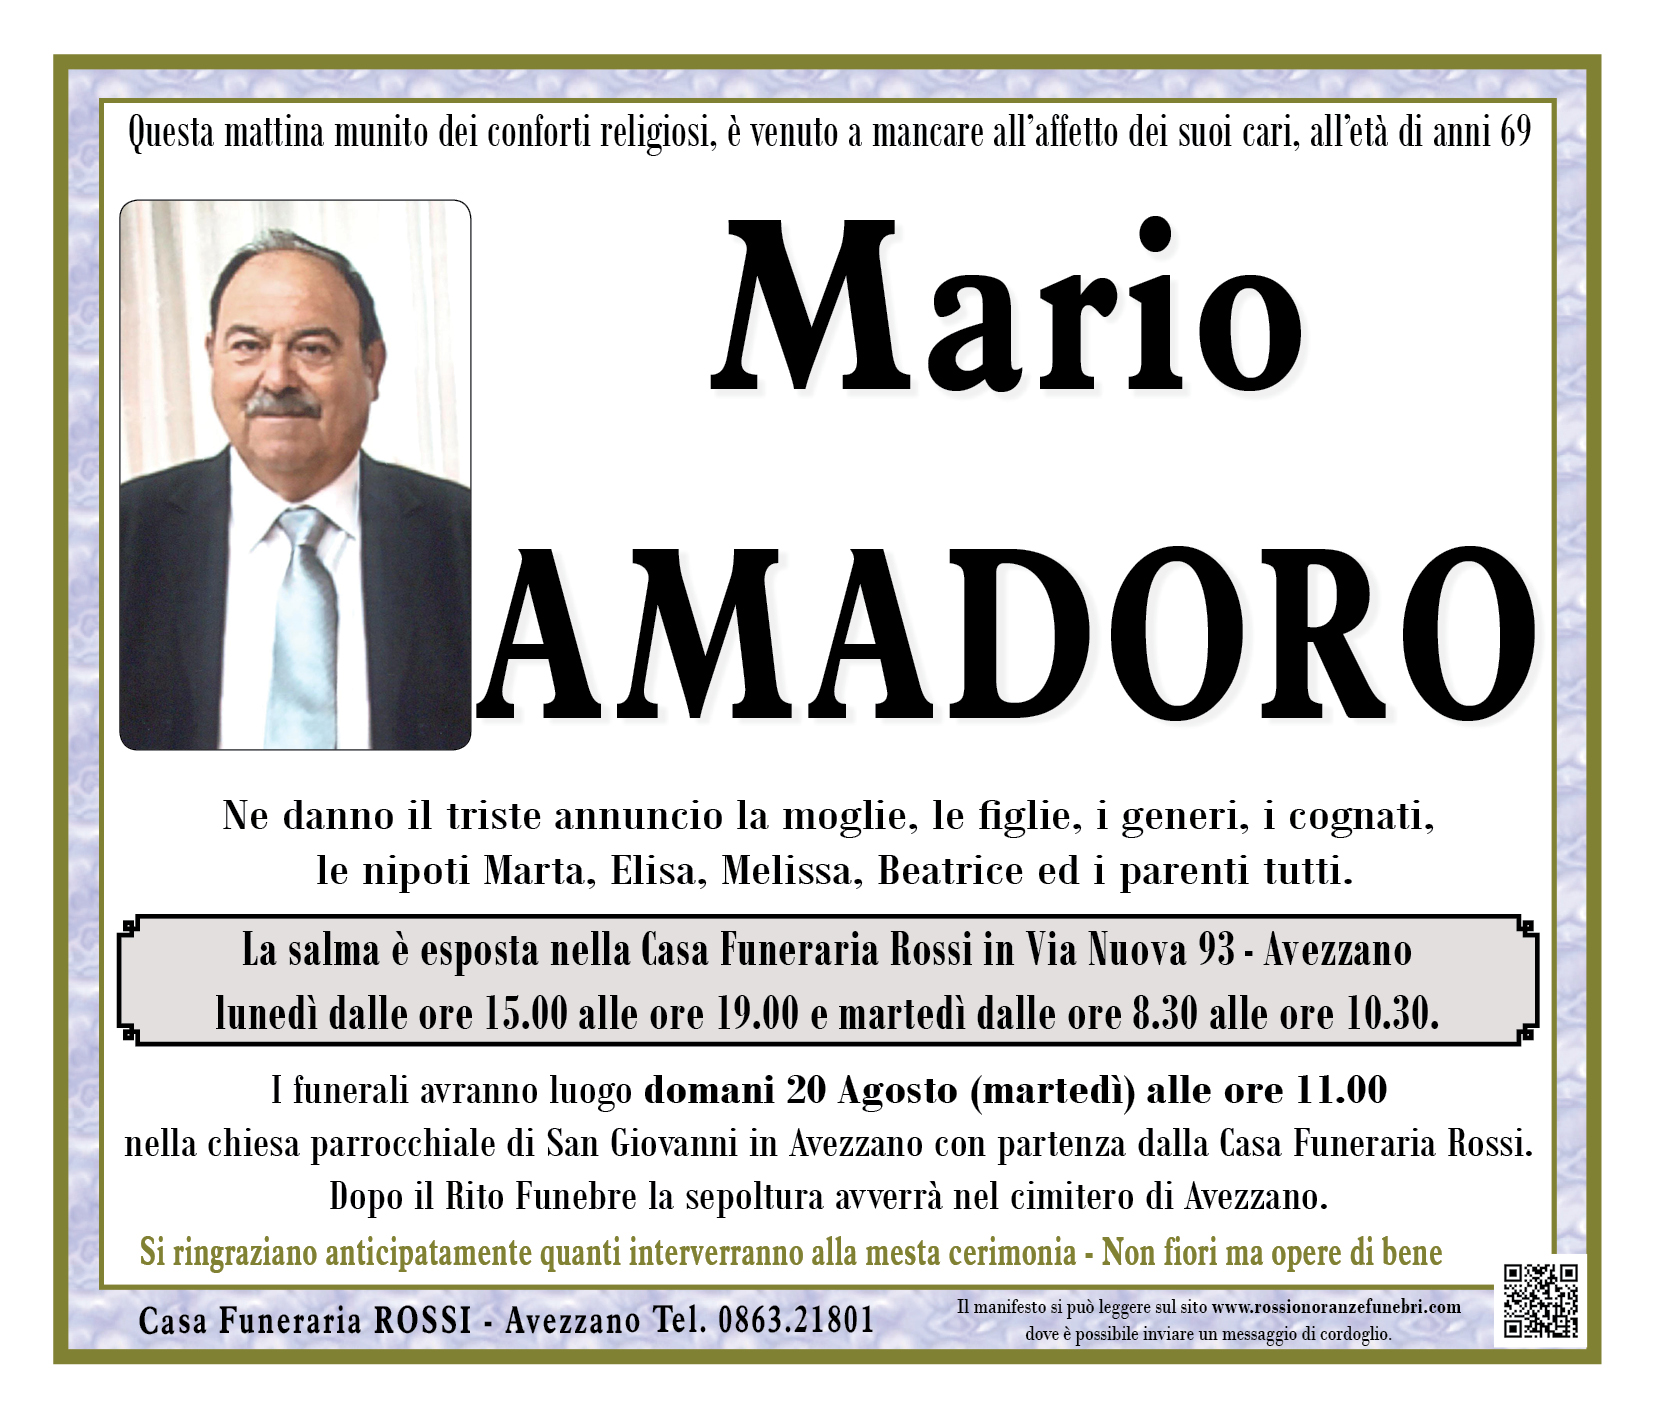 Mario Amadoro